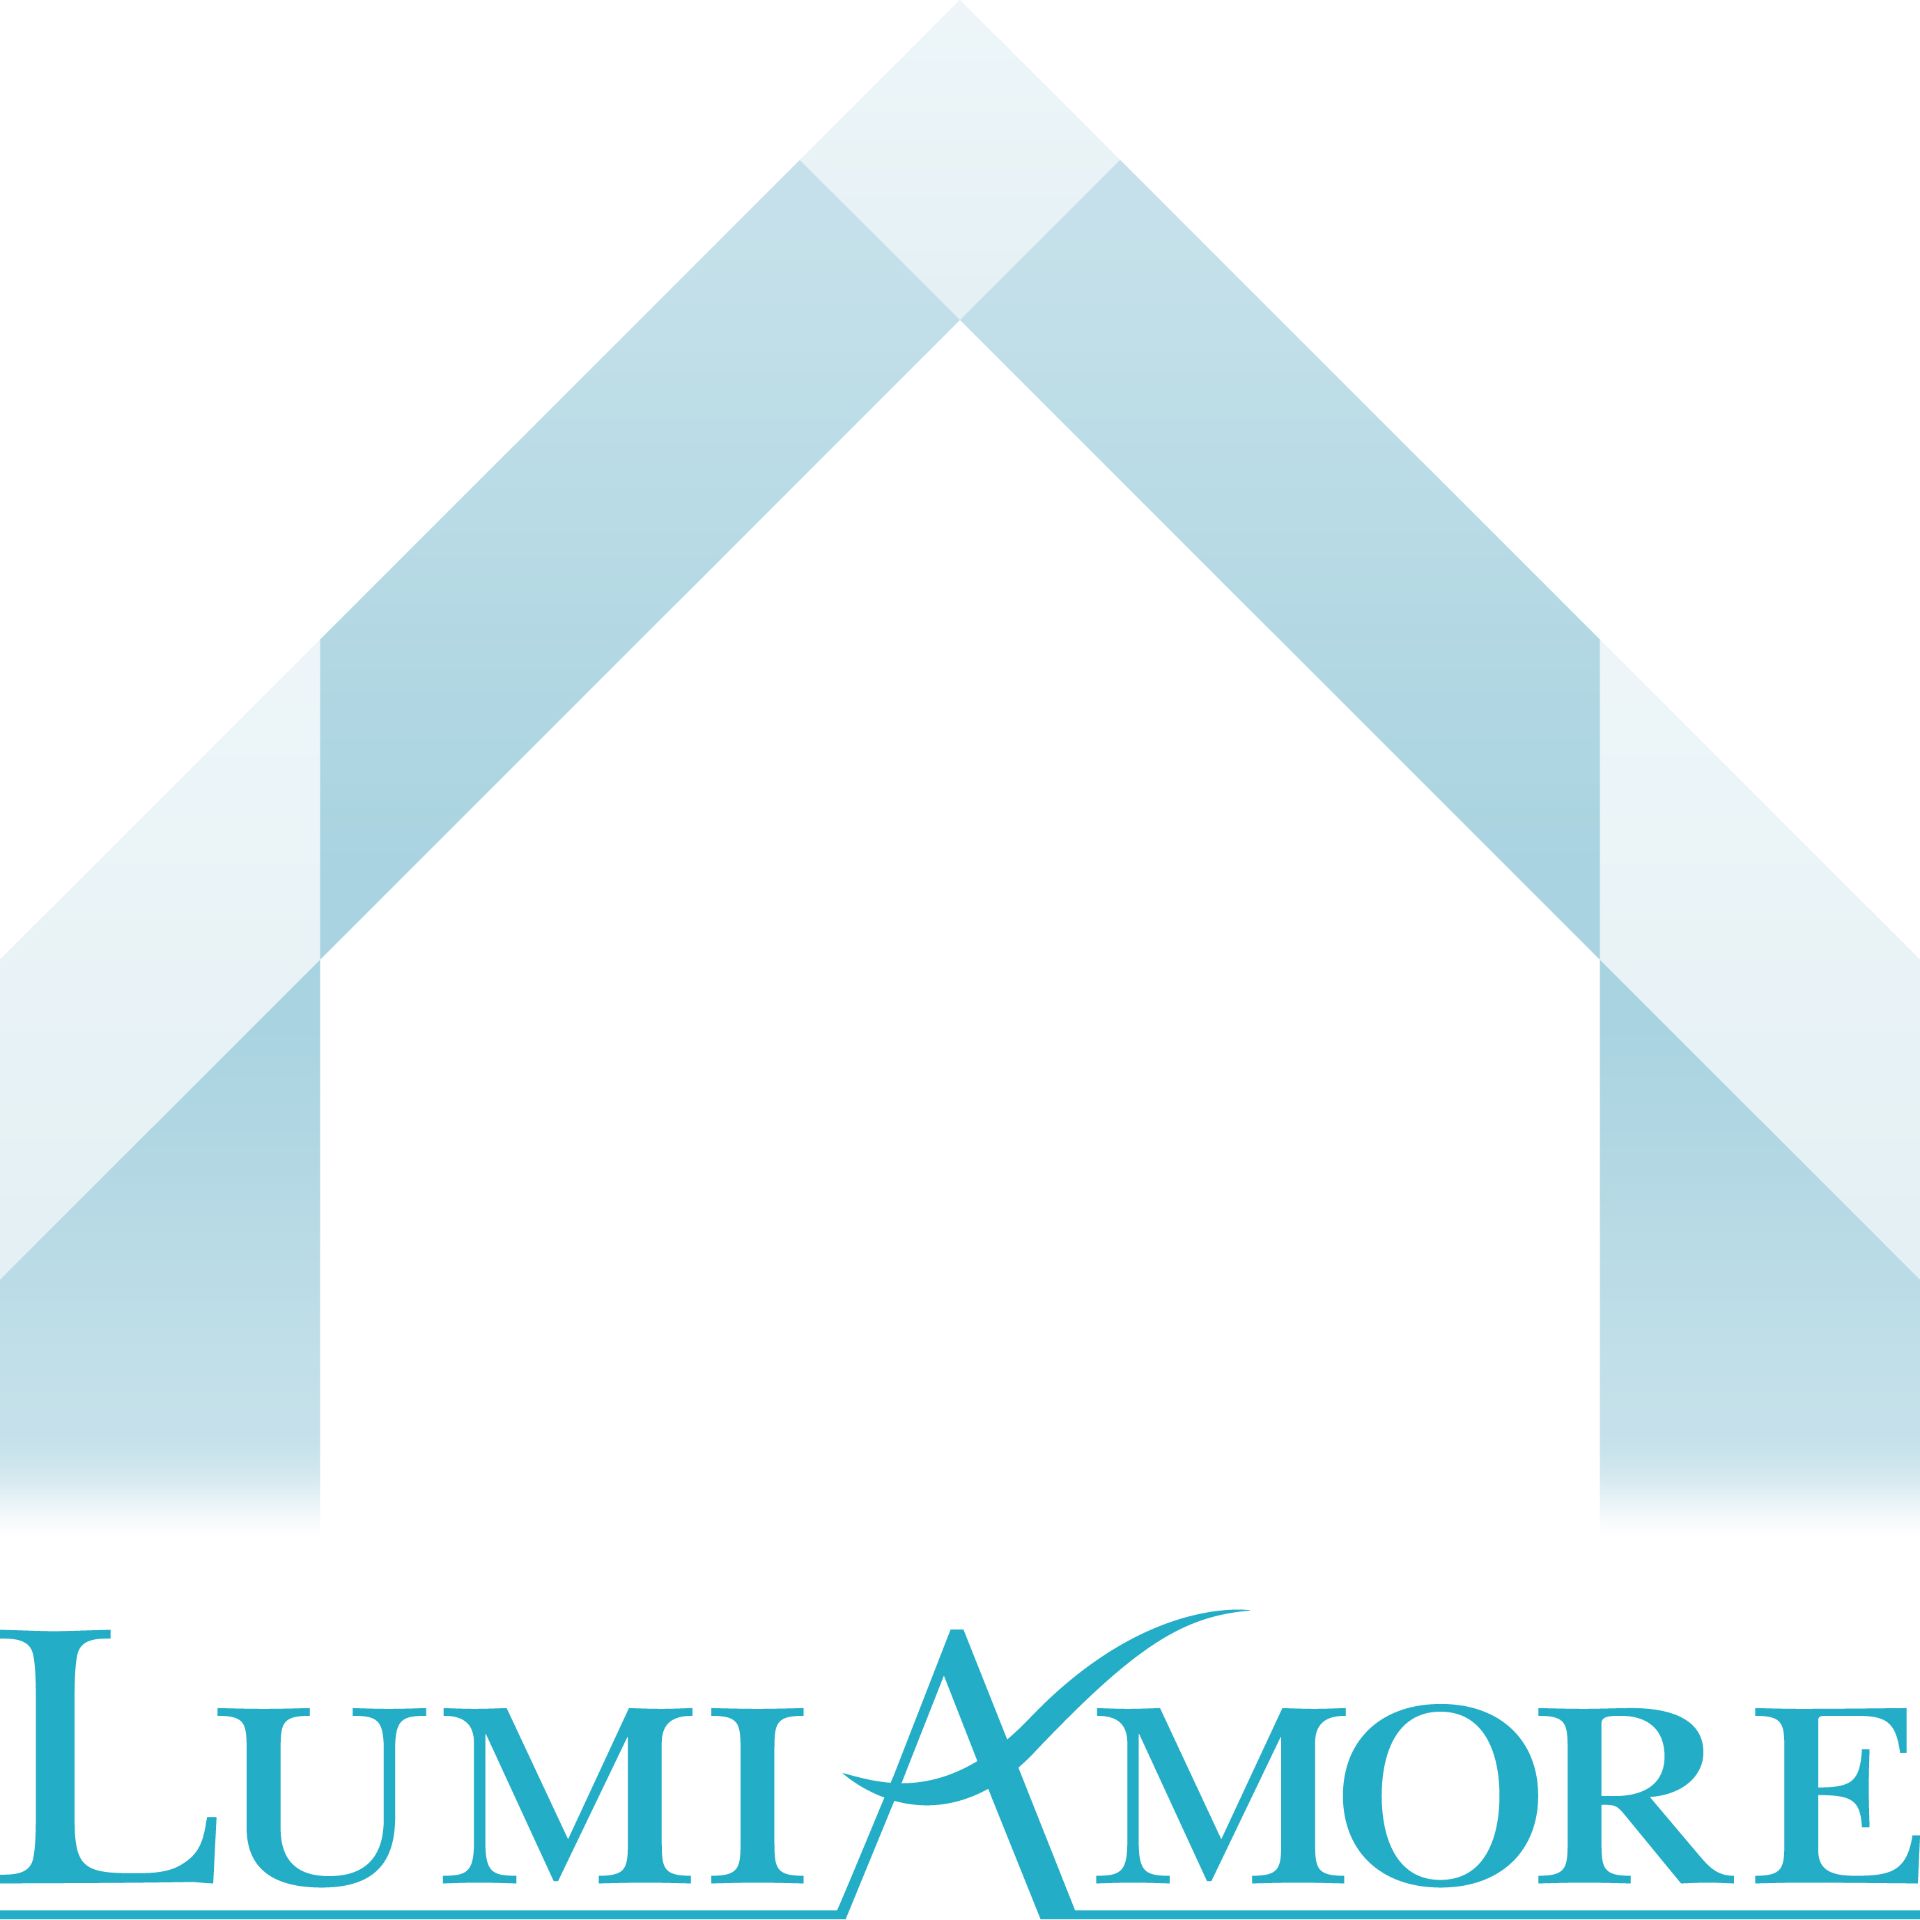 Lumiamore(ルミアモーレ)